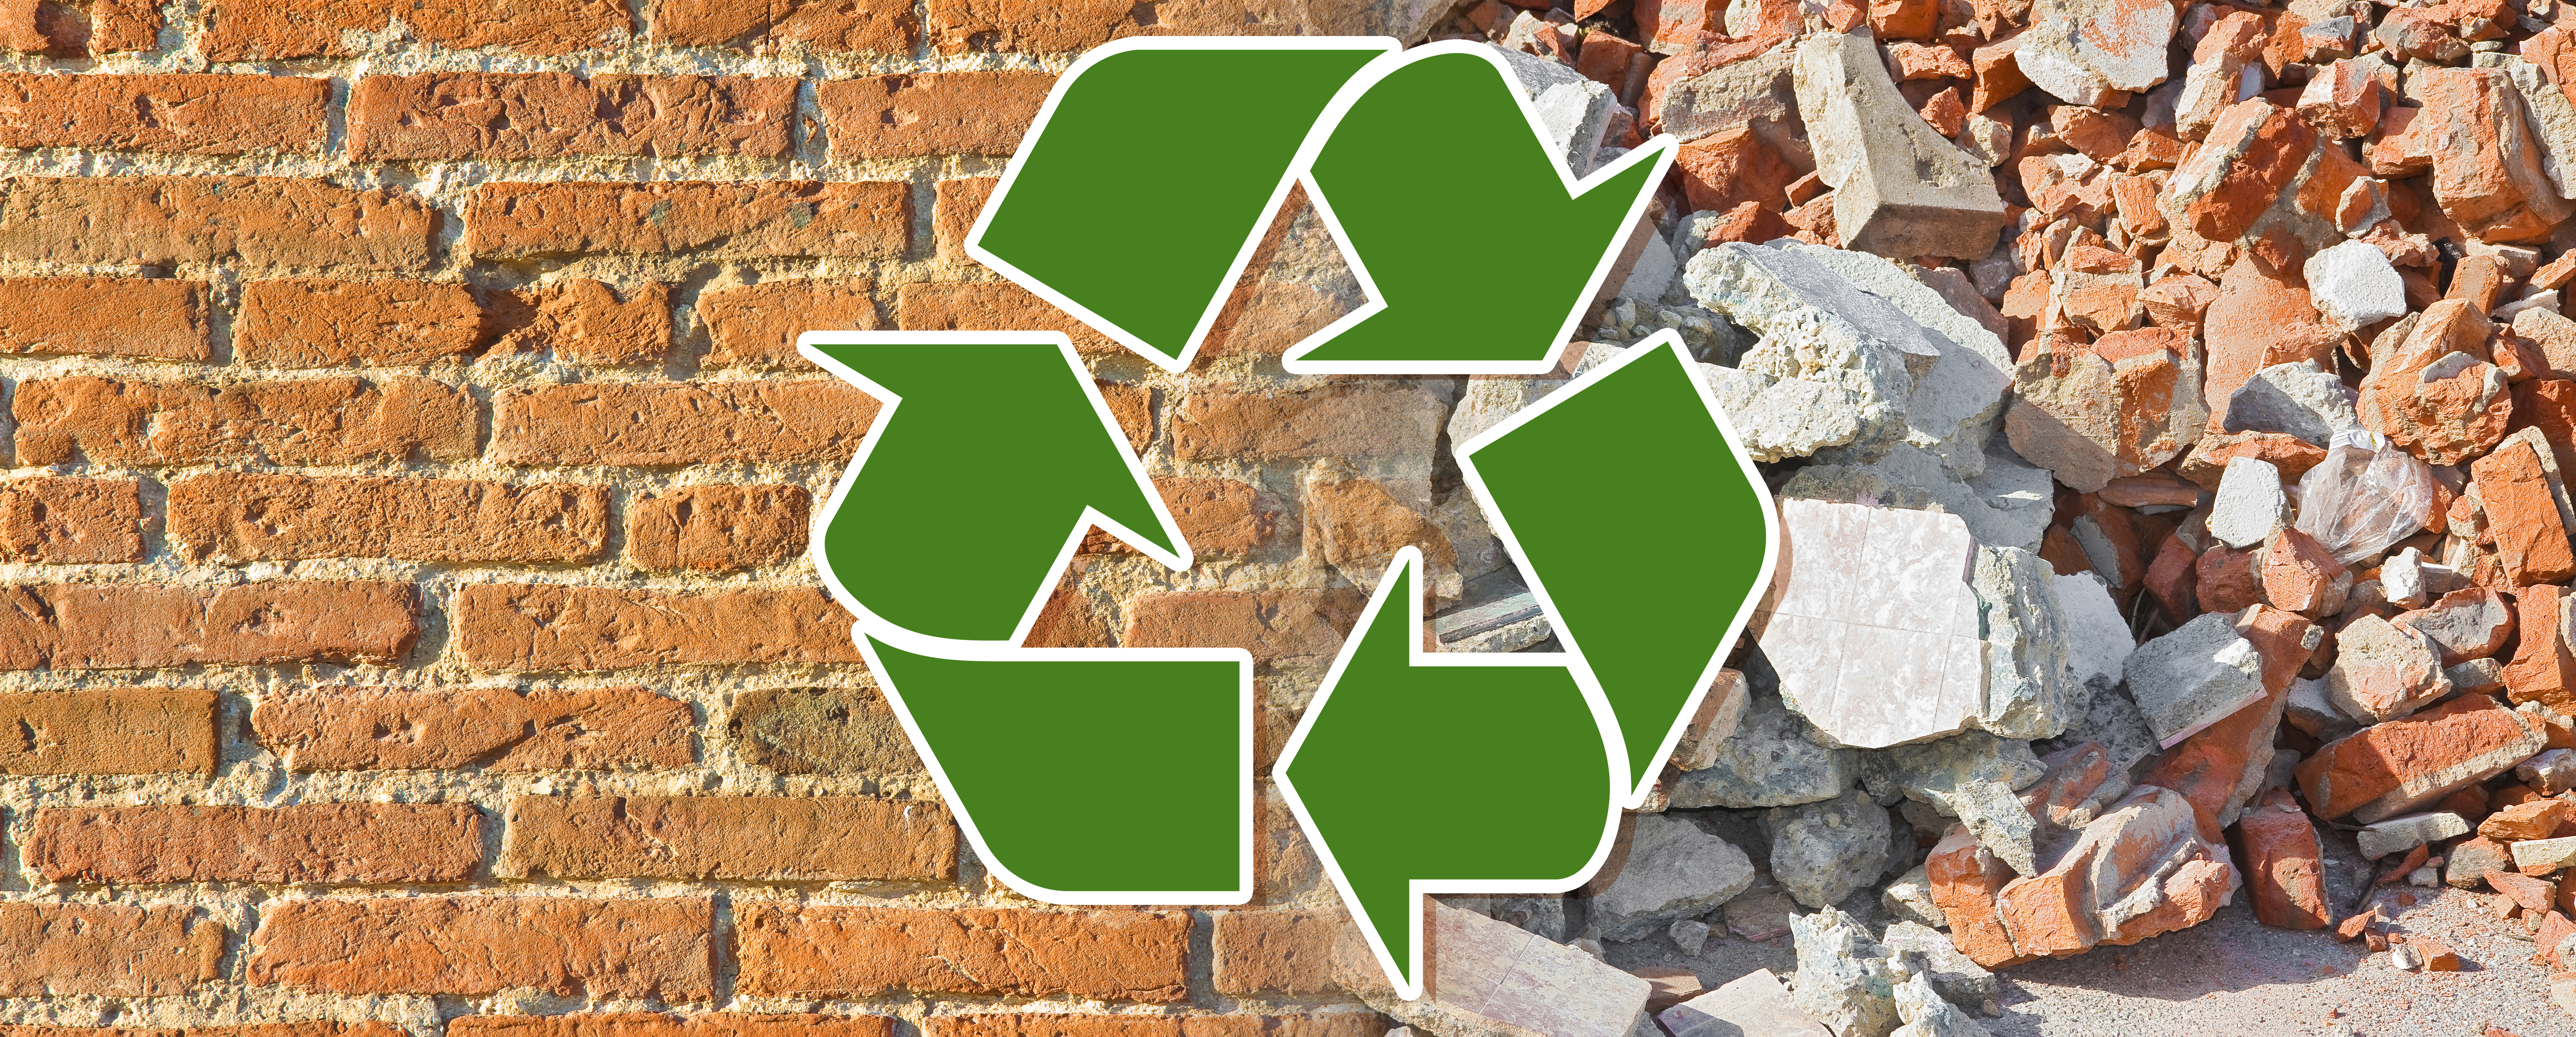 Auf dem Bild ist das Recycling Logo vor einem Mauerwerk zu sehen.